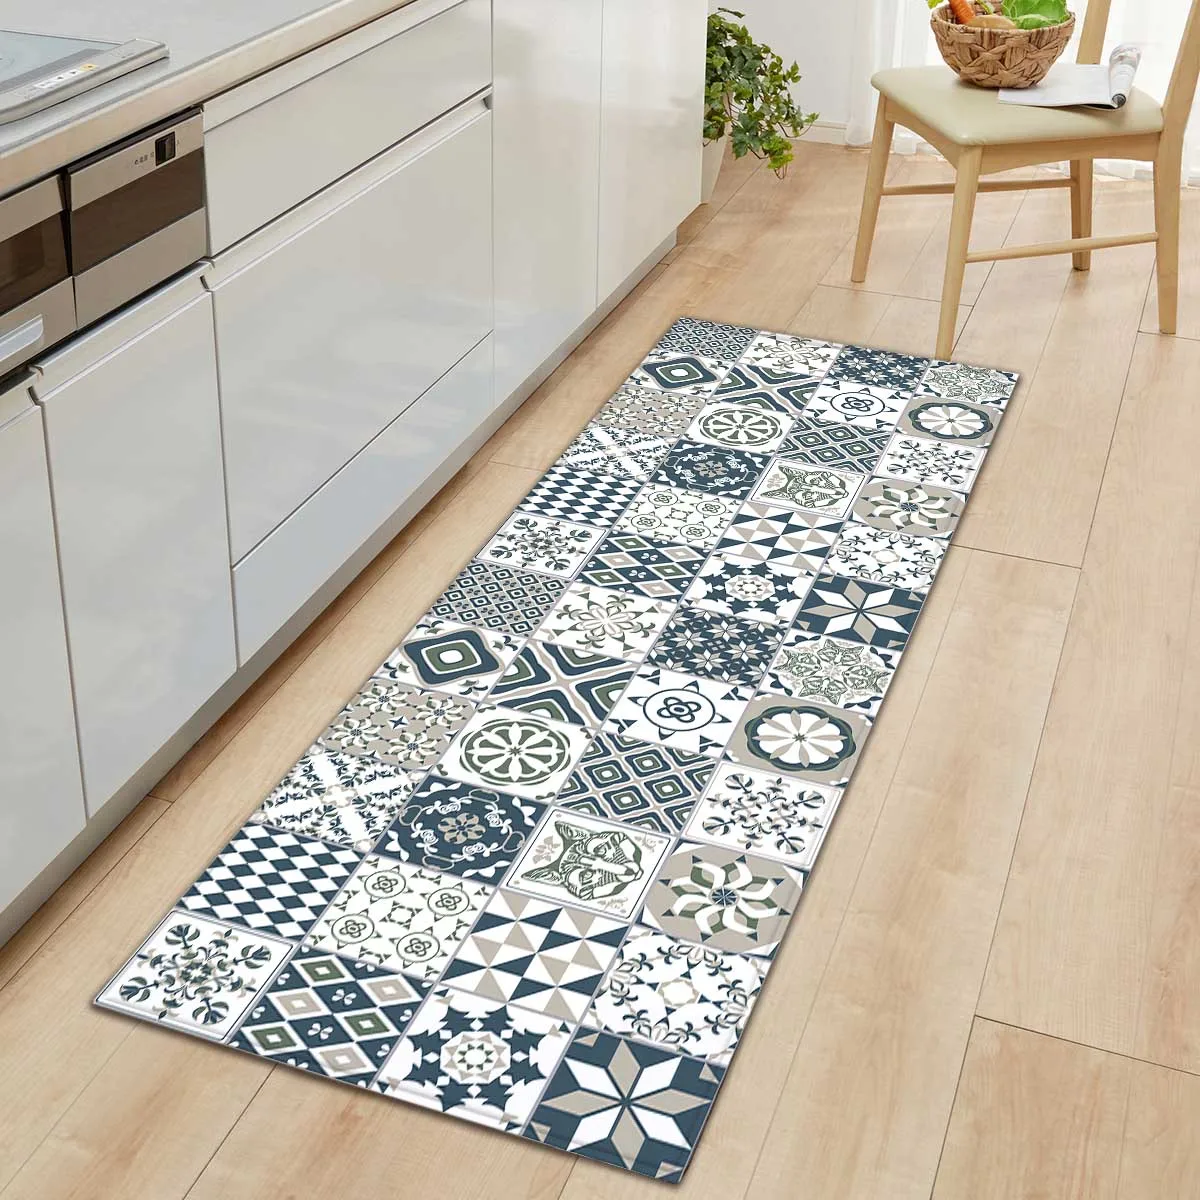 Комнатный ковер с геометрическим принтом кухонный коврик нордические ковры